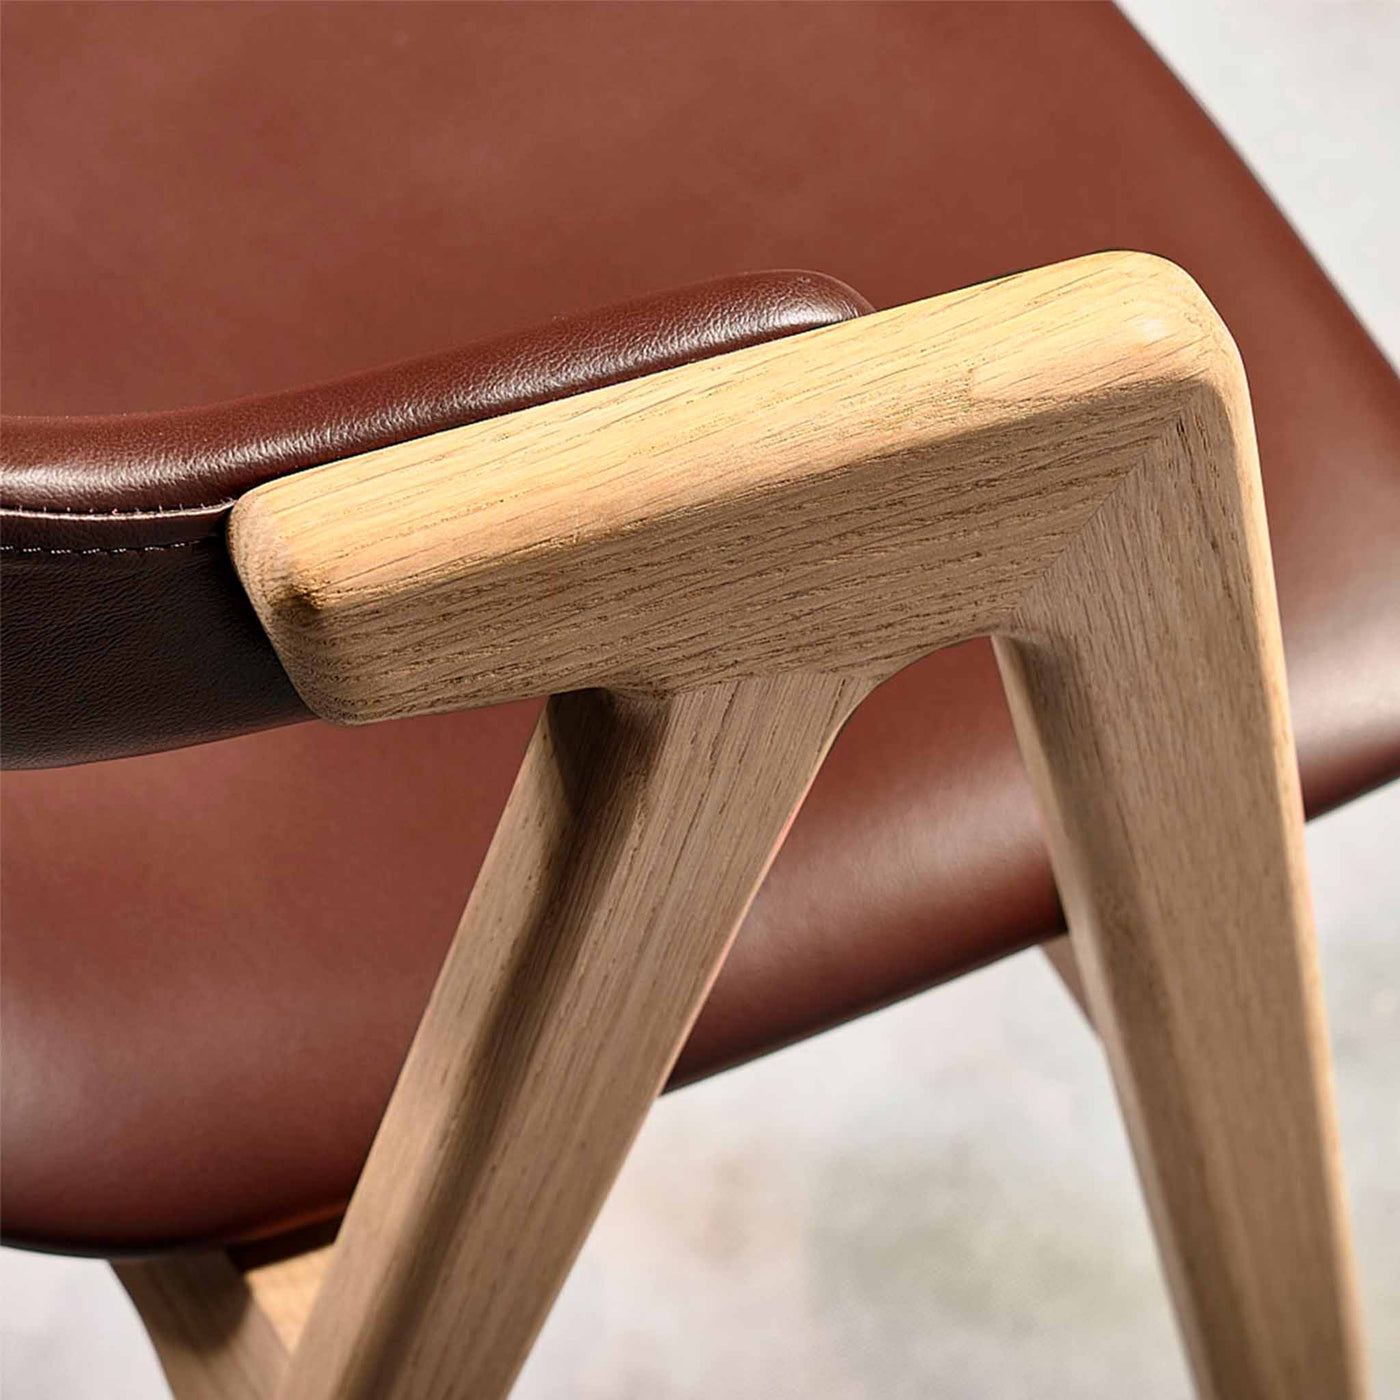 PBJ Designhouse Titan spisebordsstol i hvidpigmenteret lakeret eg med brunt læder.